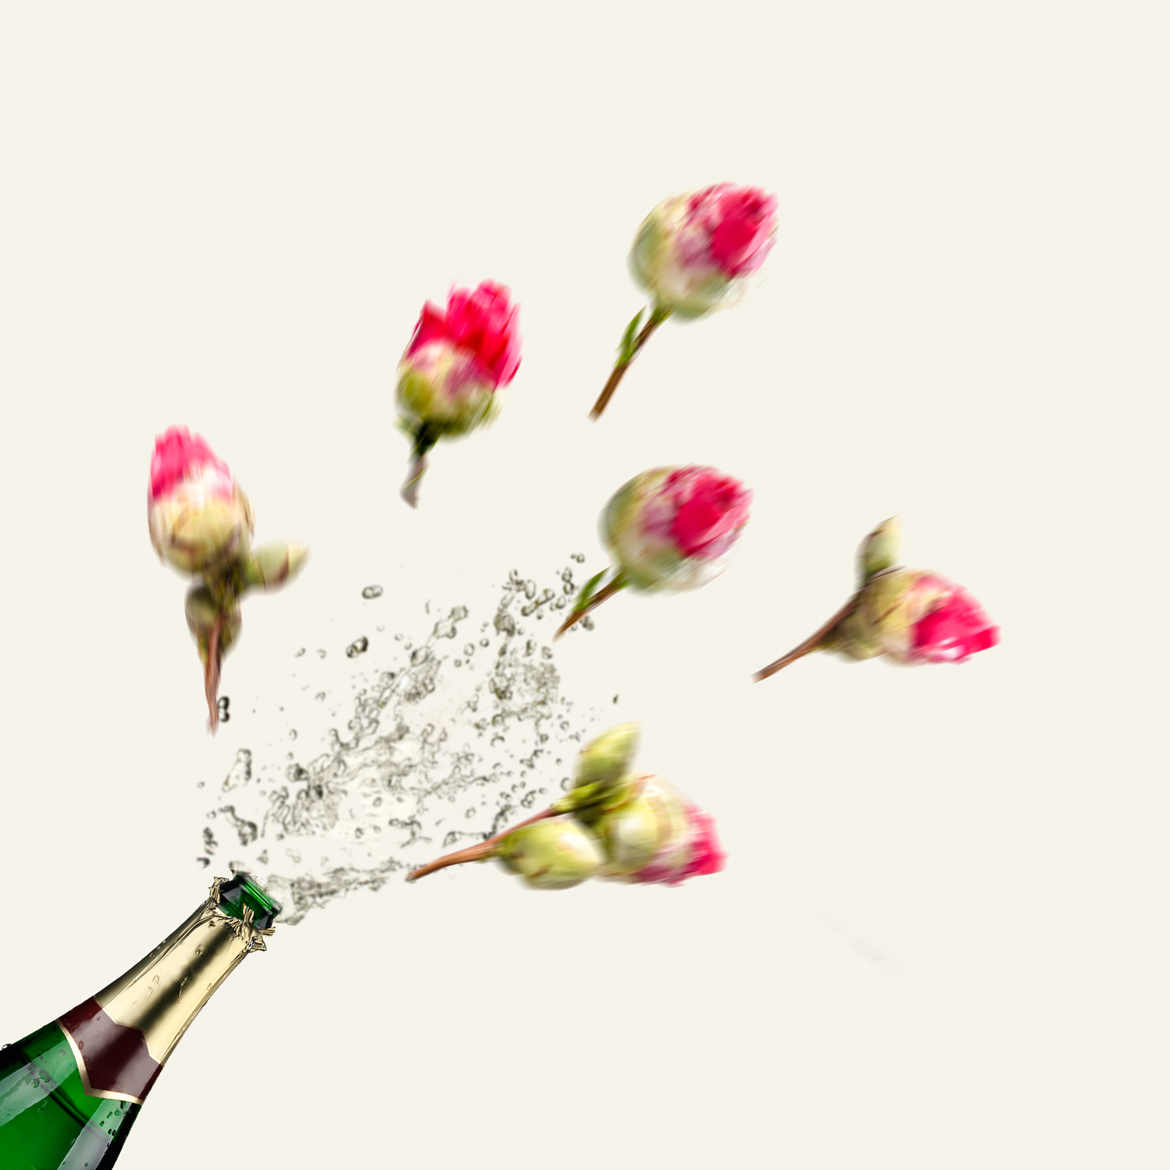 Camélias champagne